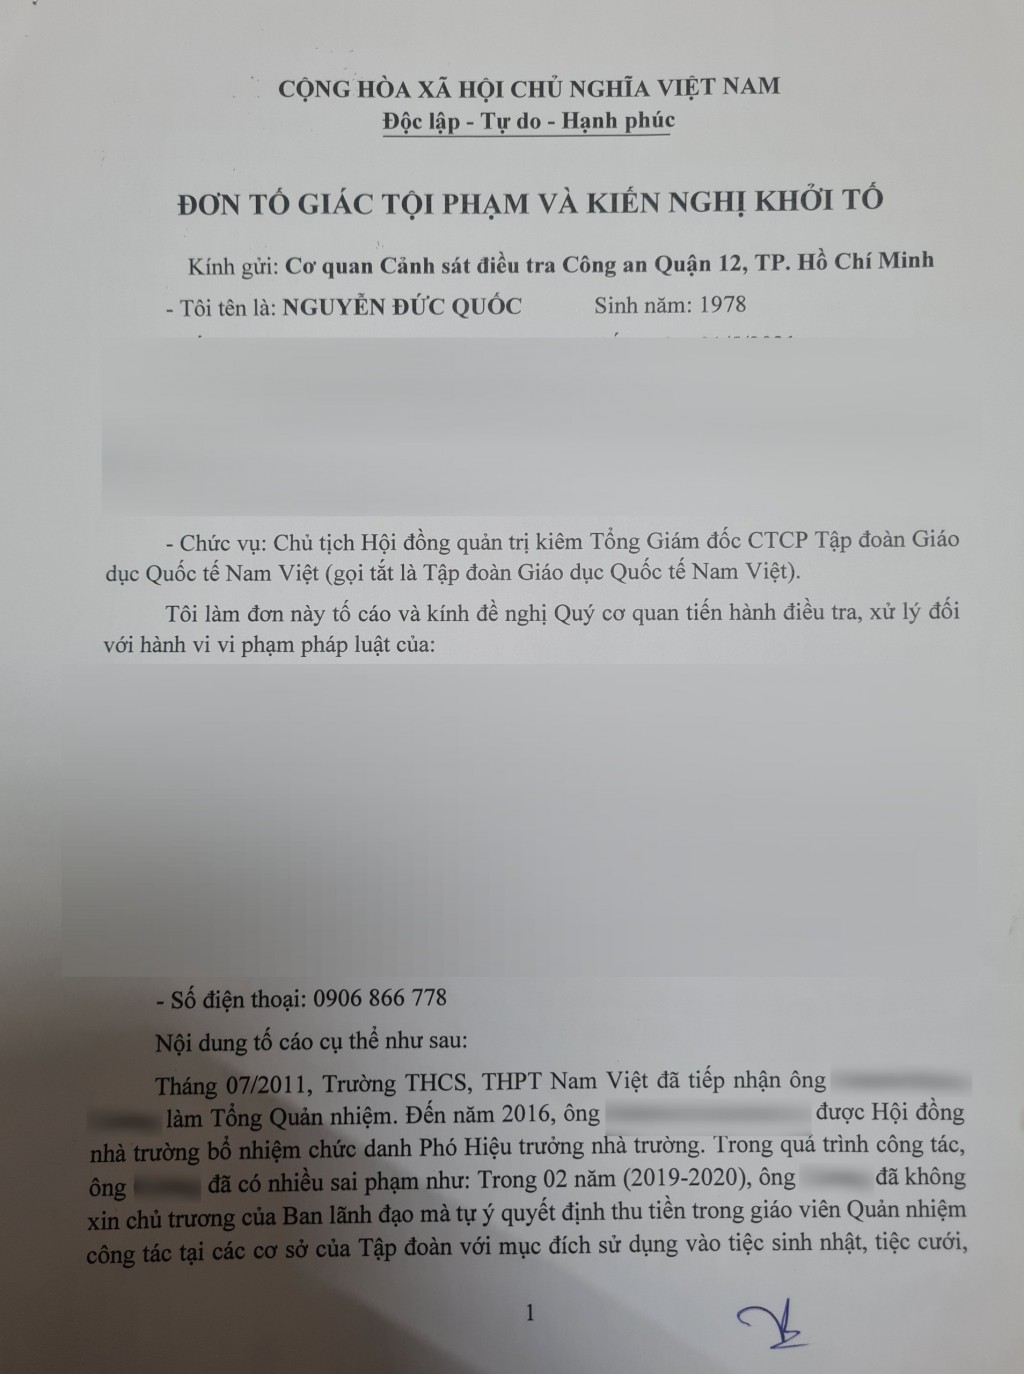 Sau nhiều lùm xùm, ông Nguyễn Đức Quốc - Chủ tịch HĐQT, kiêm Tổng Giám đốc Công ty Cổ phần Giáo dục Quốc tế Nam Việt đã làm đơn tố giác ông H.H.C vì tội vu khống